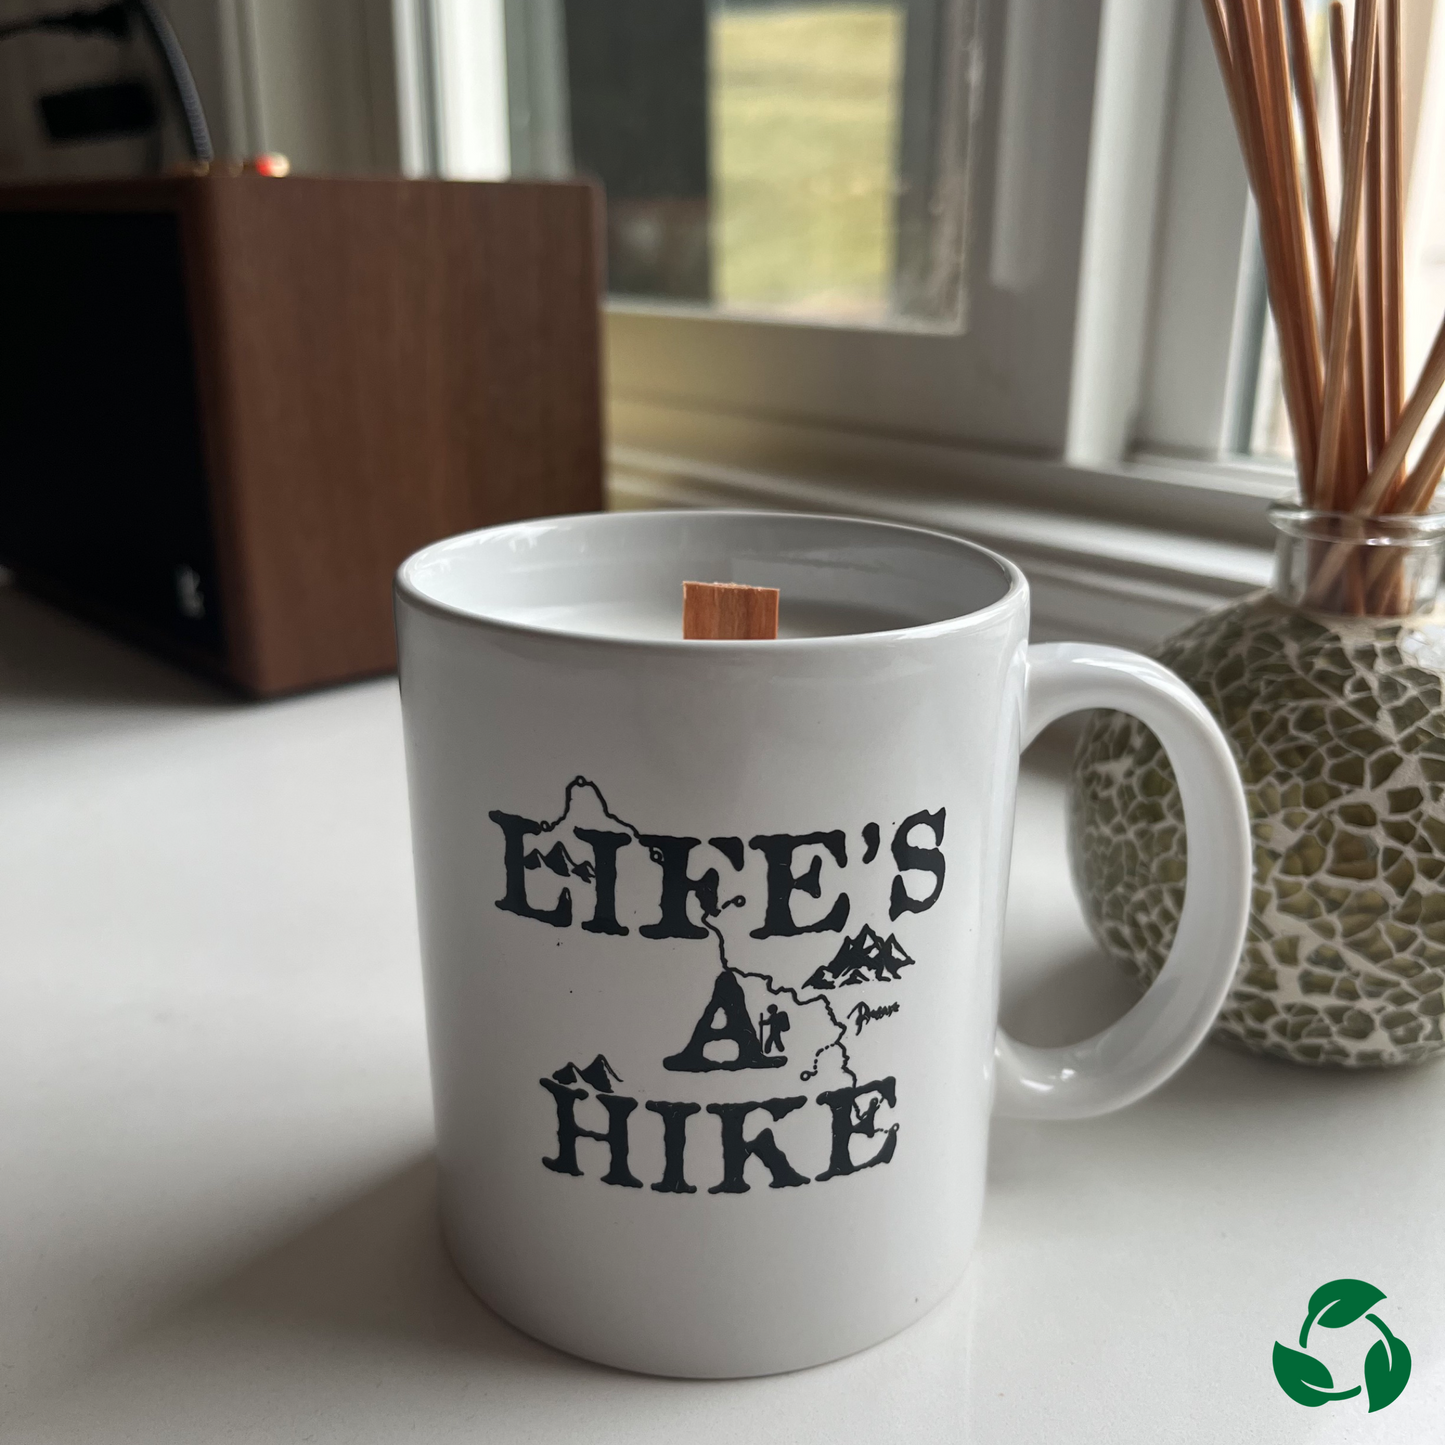 Upcycled "Life's A Hike" Mug Candles